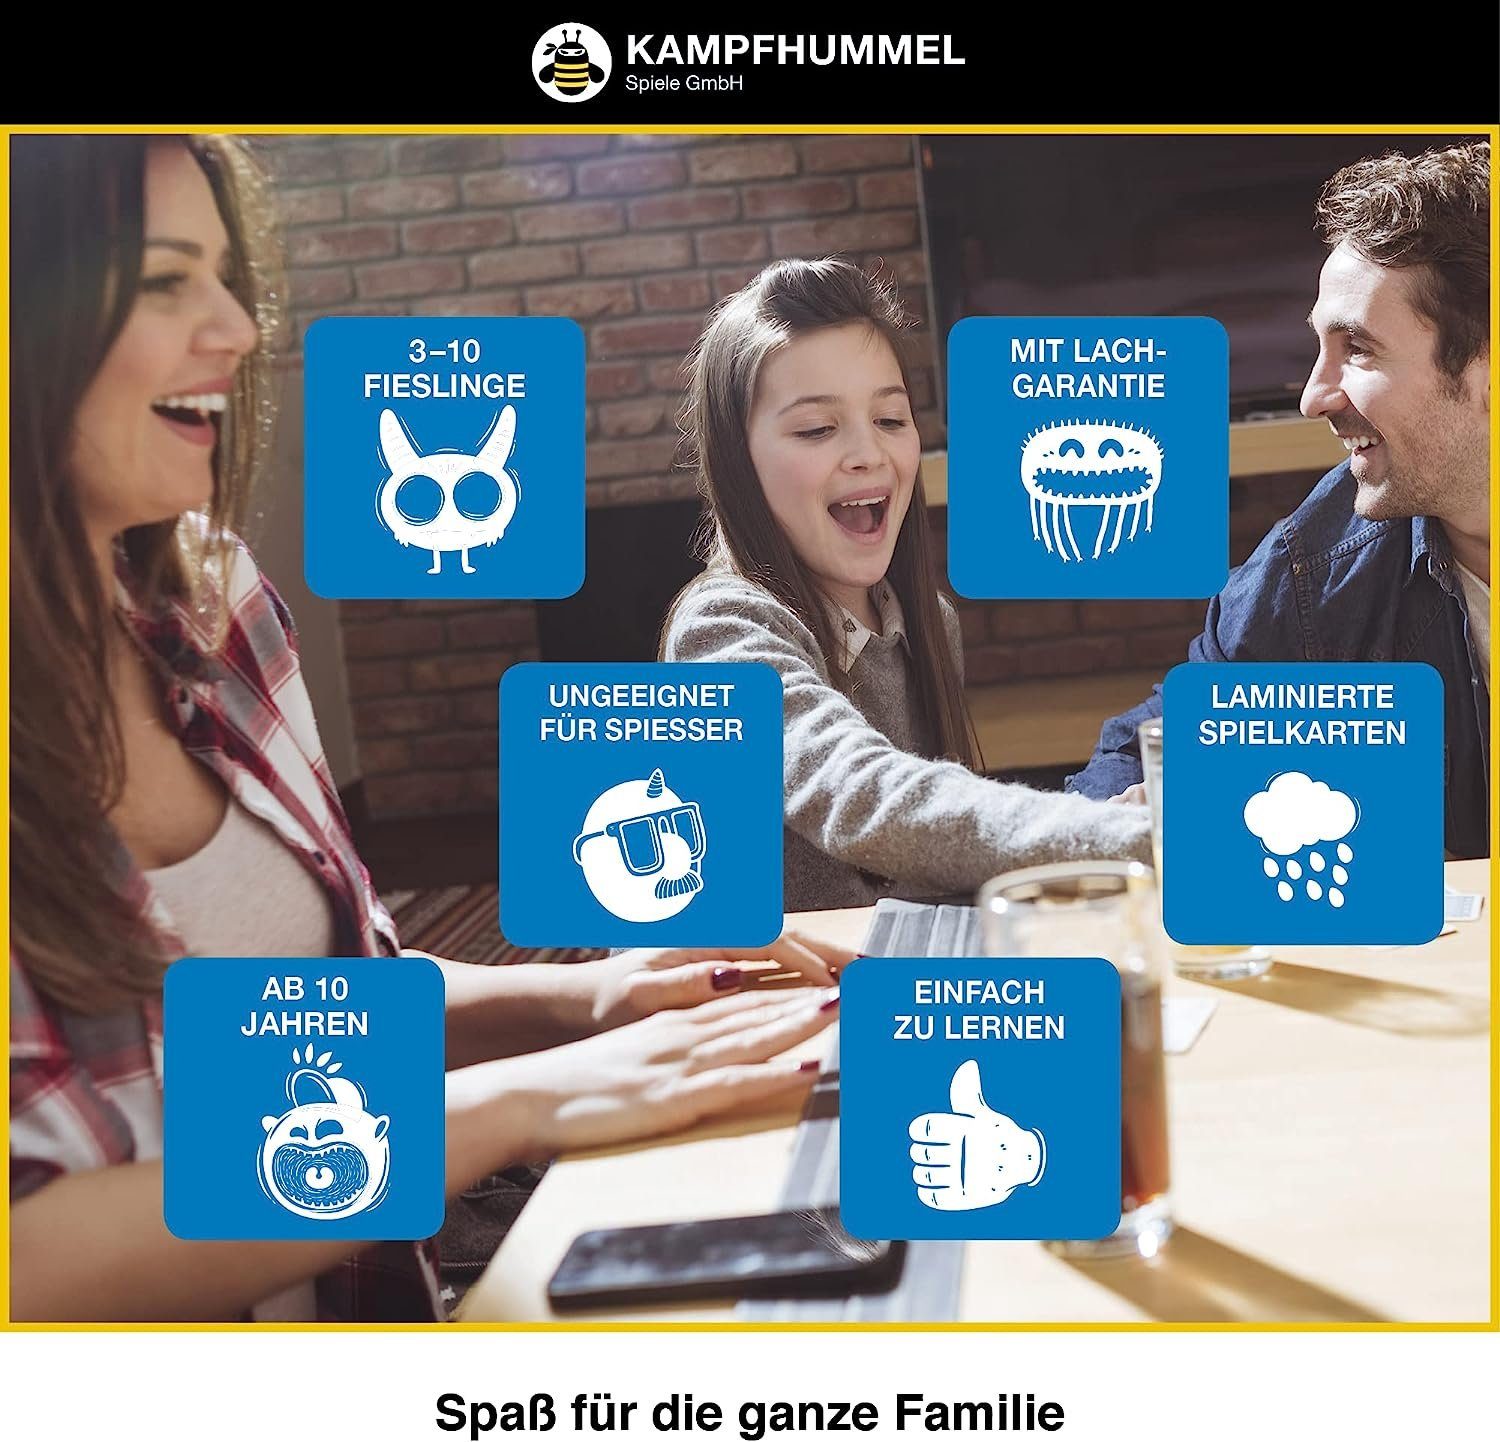 Kampfhummel Spiel, - Kinder Familien-Edition Kampf das - gegen Spiessertum Partyspiel für